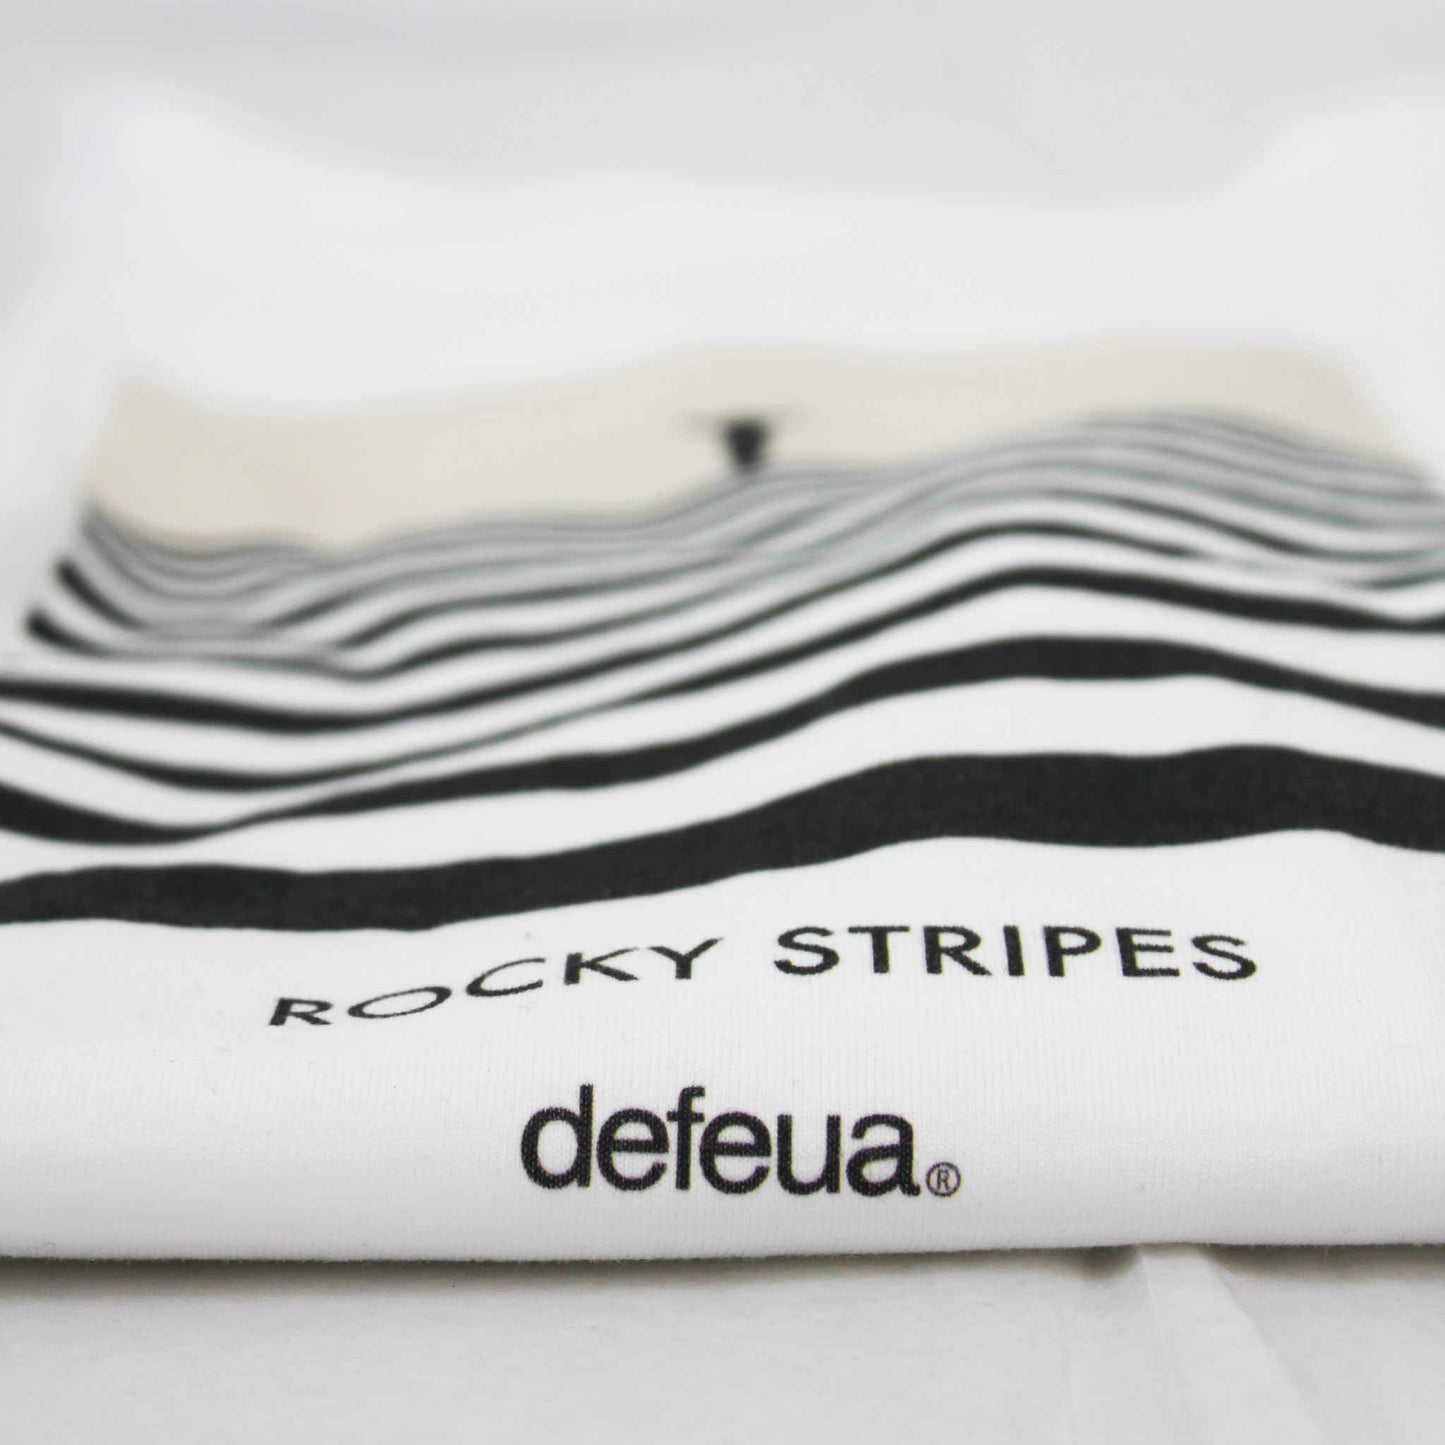 Defeua® ROCKY STRIPES dettaglio scritta maglietta